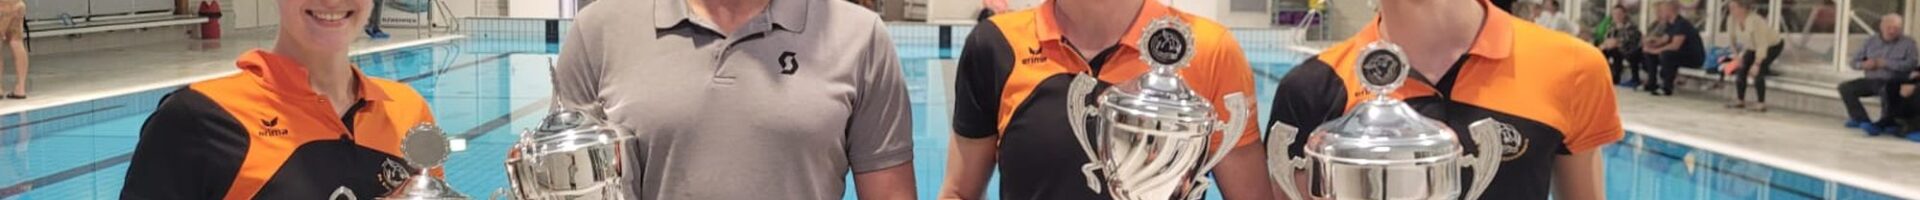 Ouderwets gezellige clubkampioenschappen Biesboschzwemmers